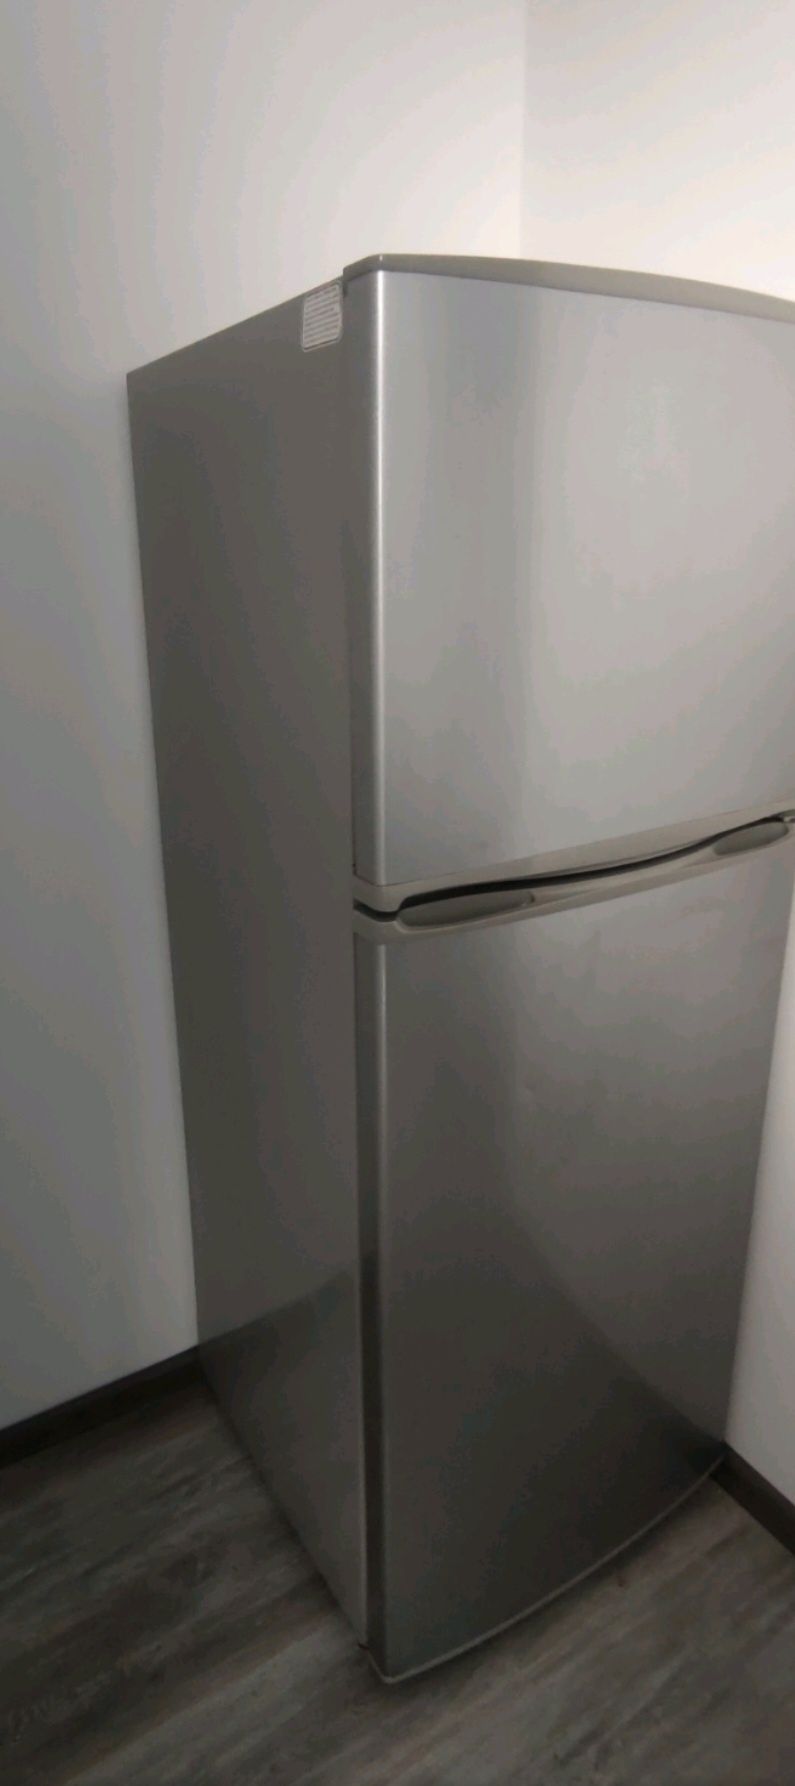 Холодильники Samsung 600x1564x600 мм